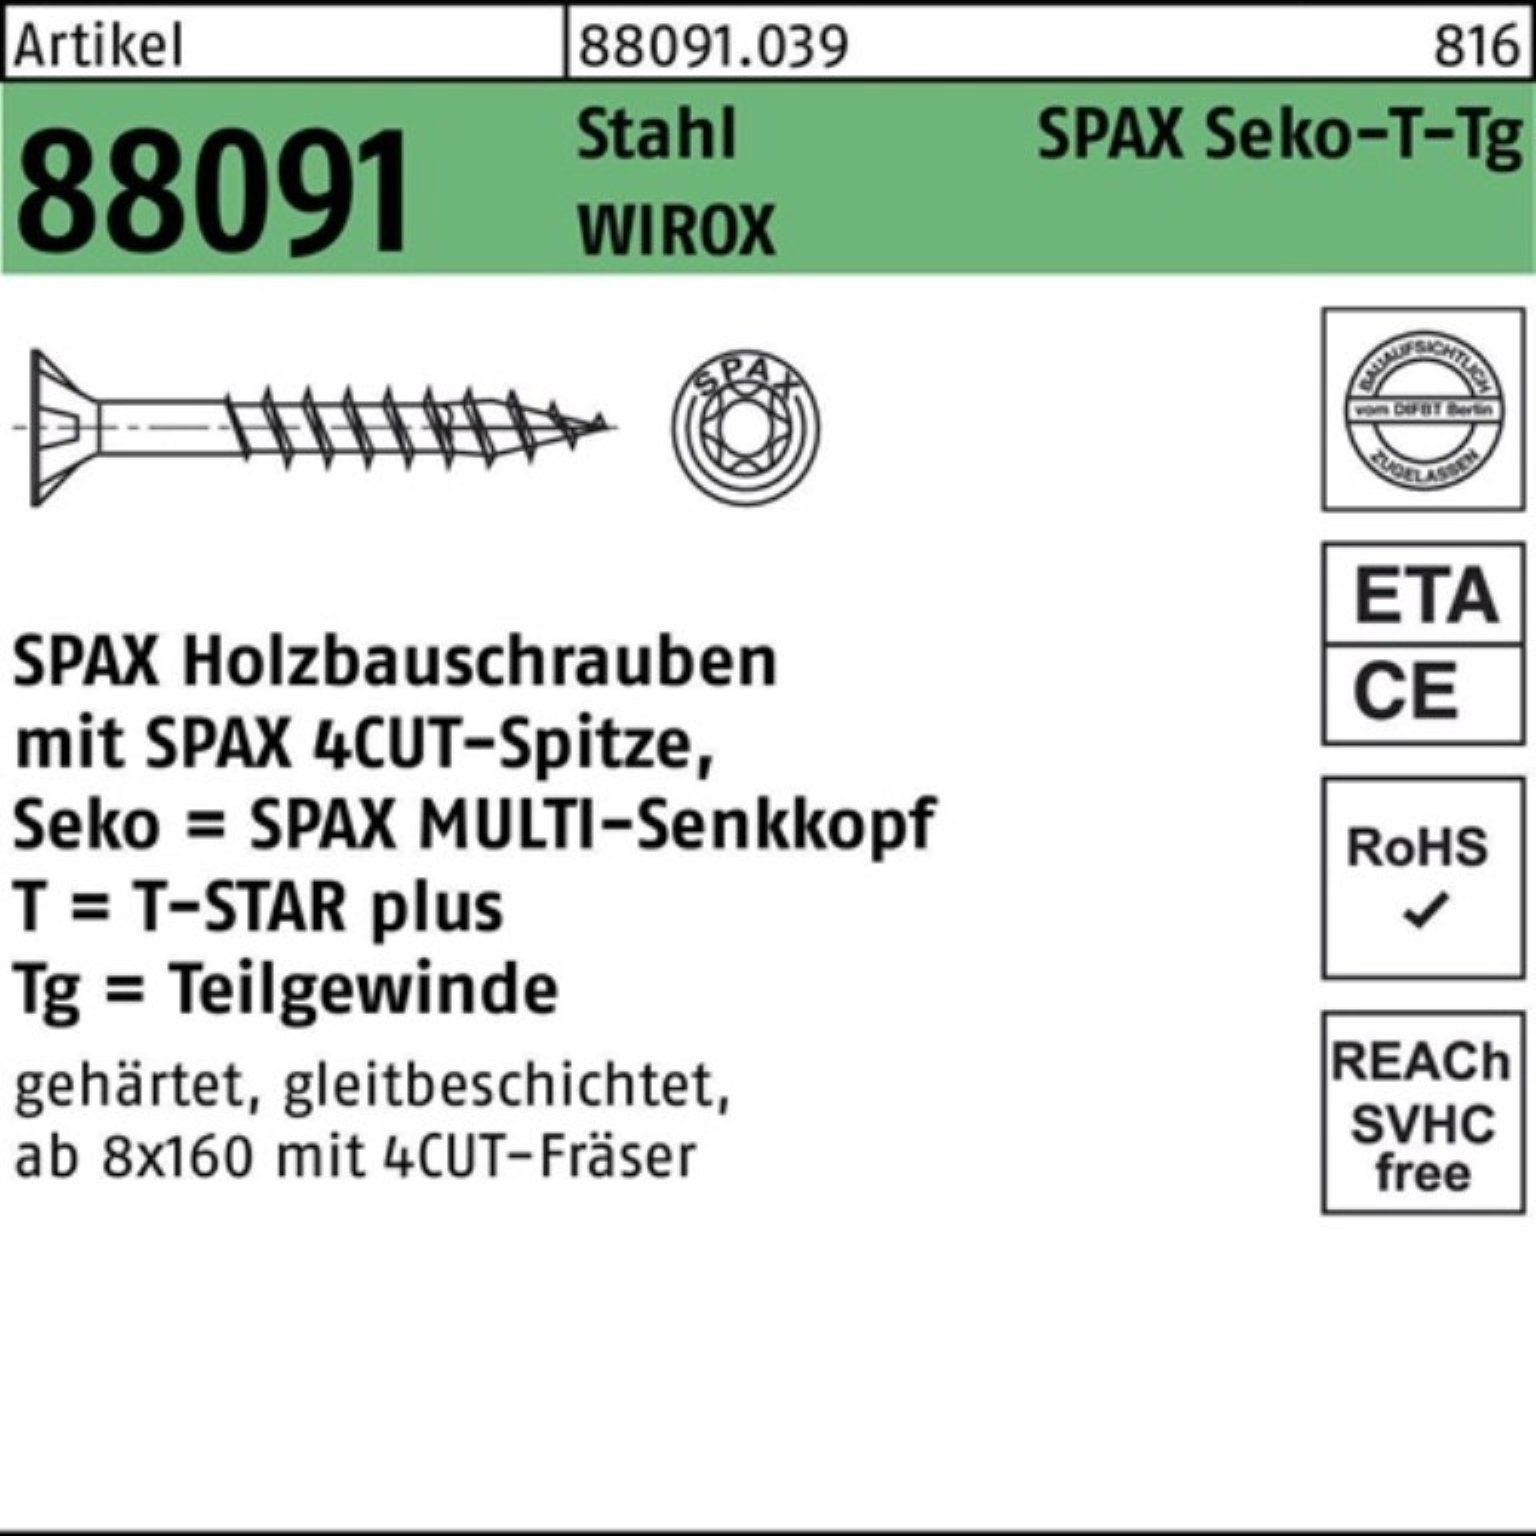 SPAX Schraube 100er Pack Schraube R 88091 SEKO/T-STAR TG 10x 200/80-T50 Stahl WIROX